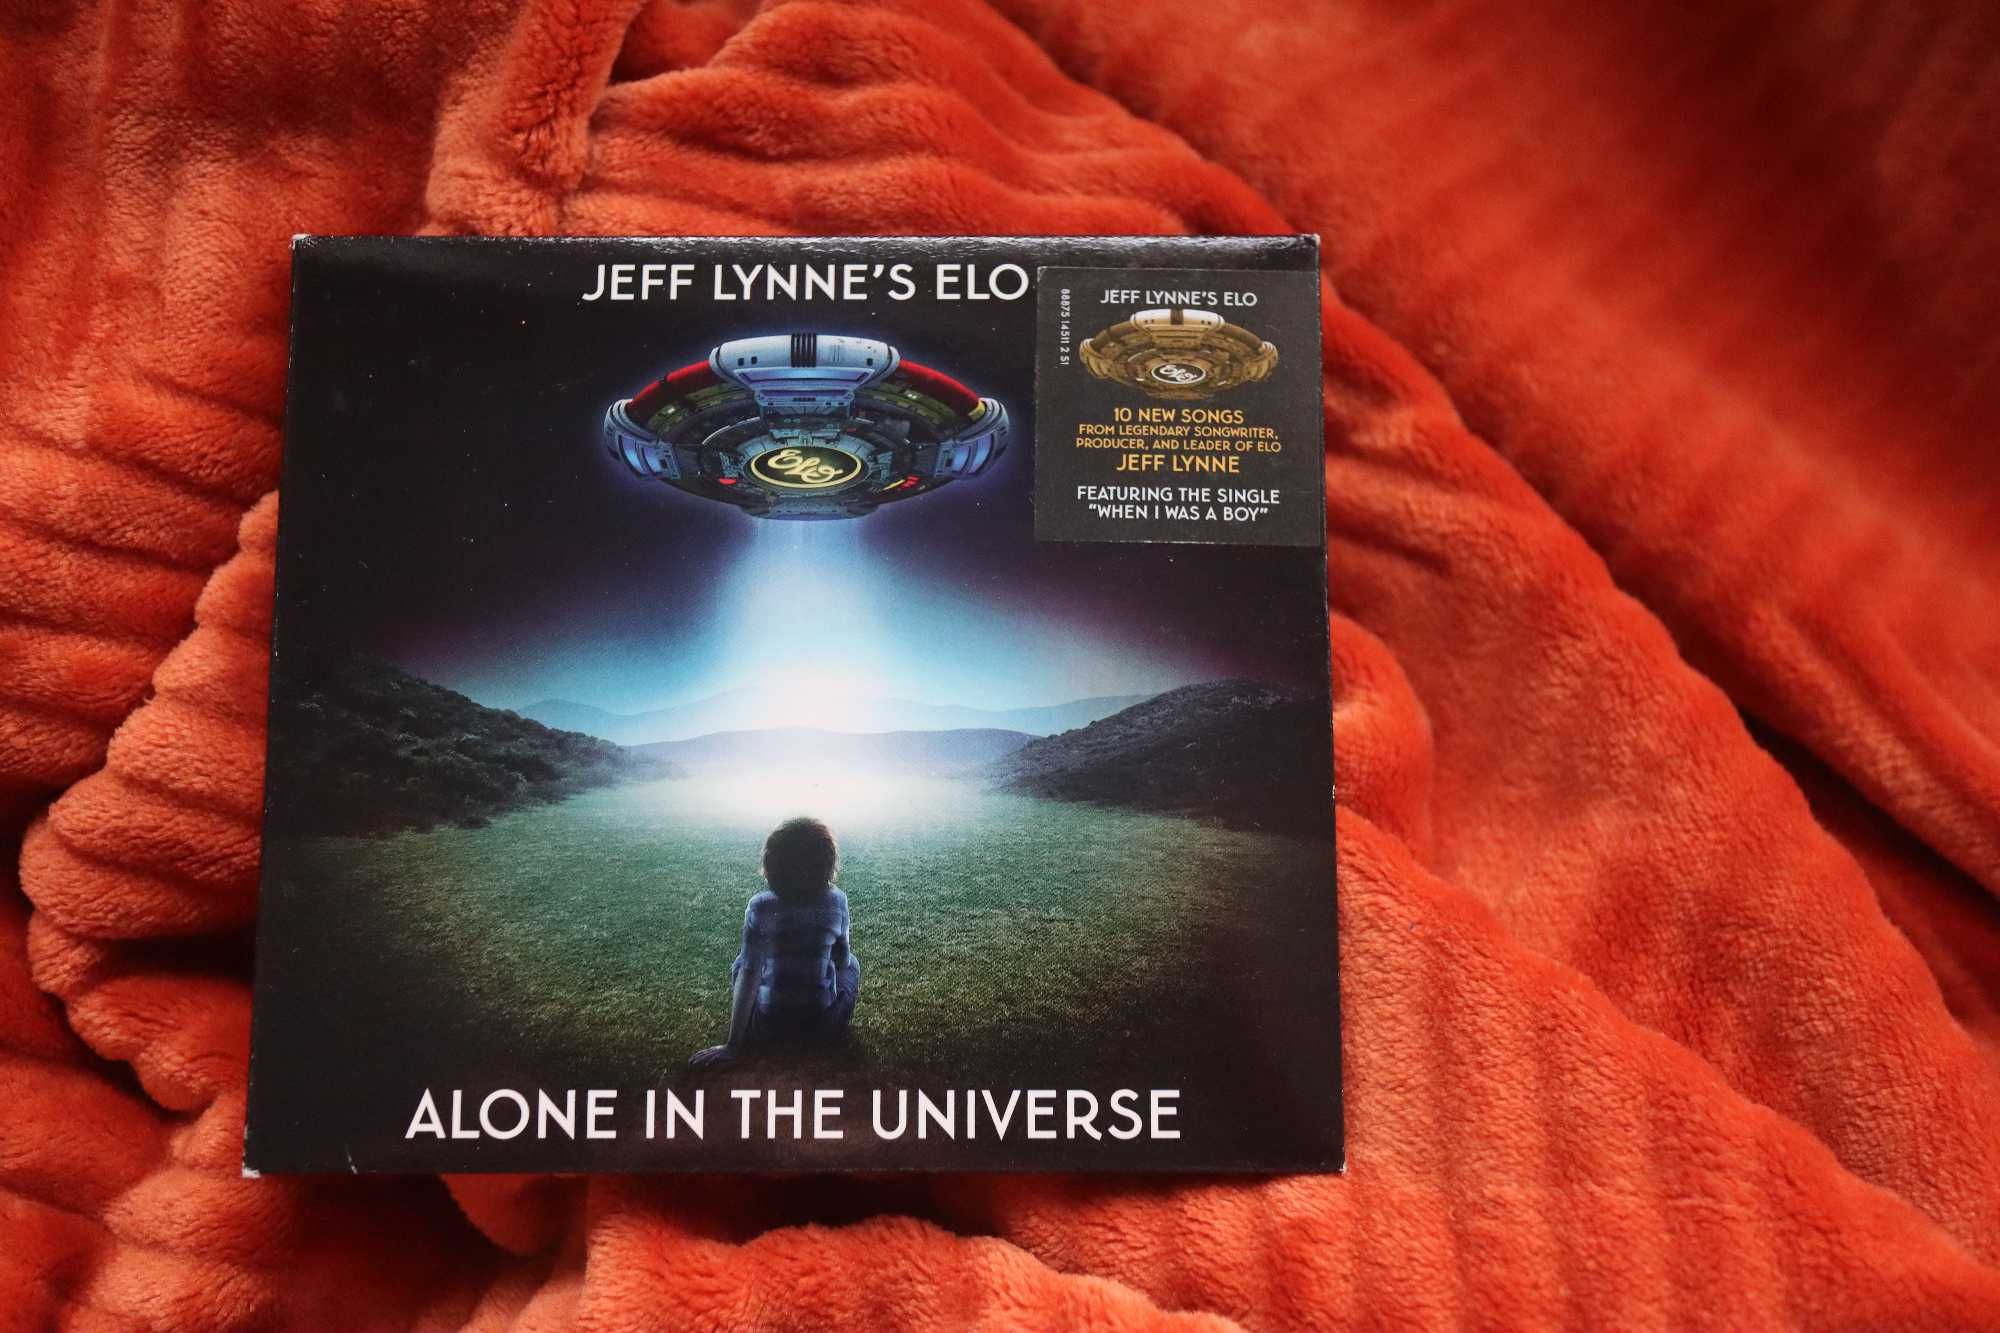 Jeff Lynne's ELO "Alone in the Universe" CD